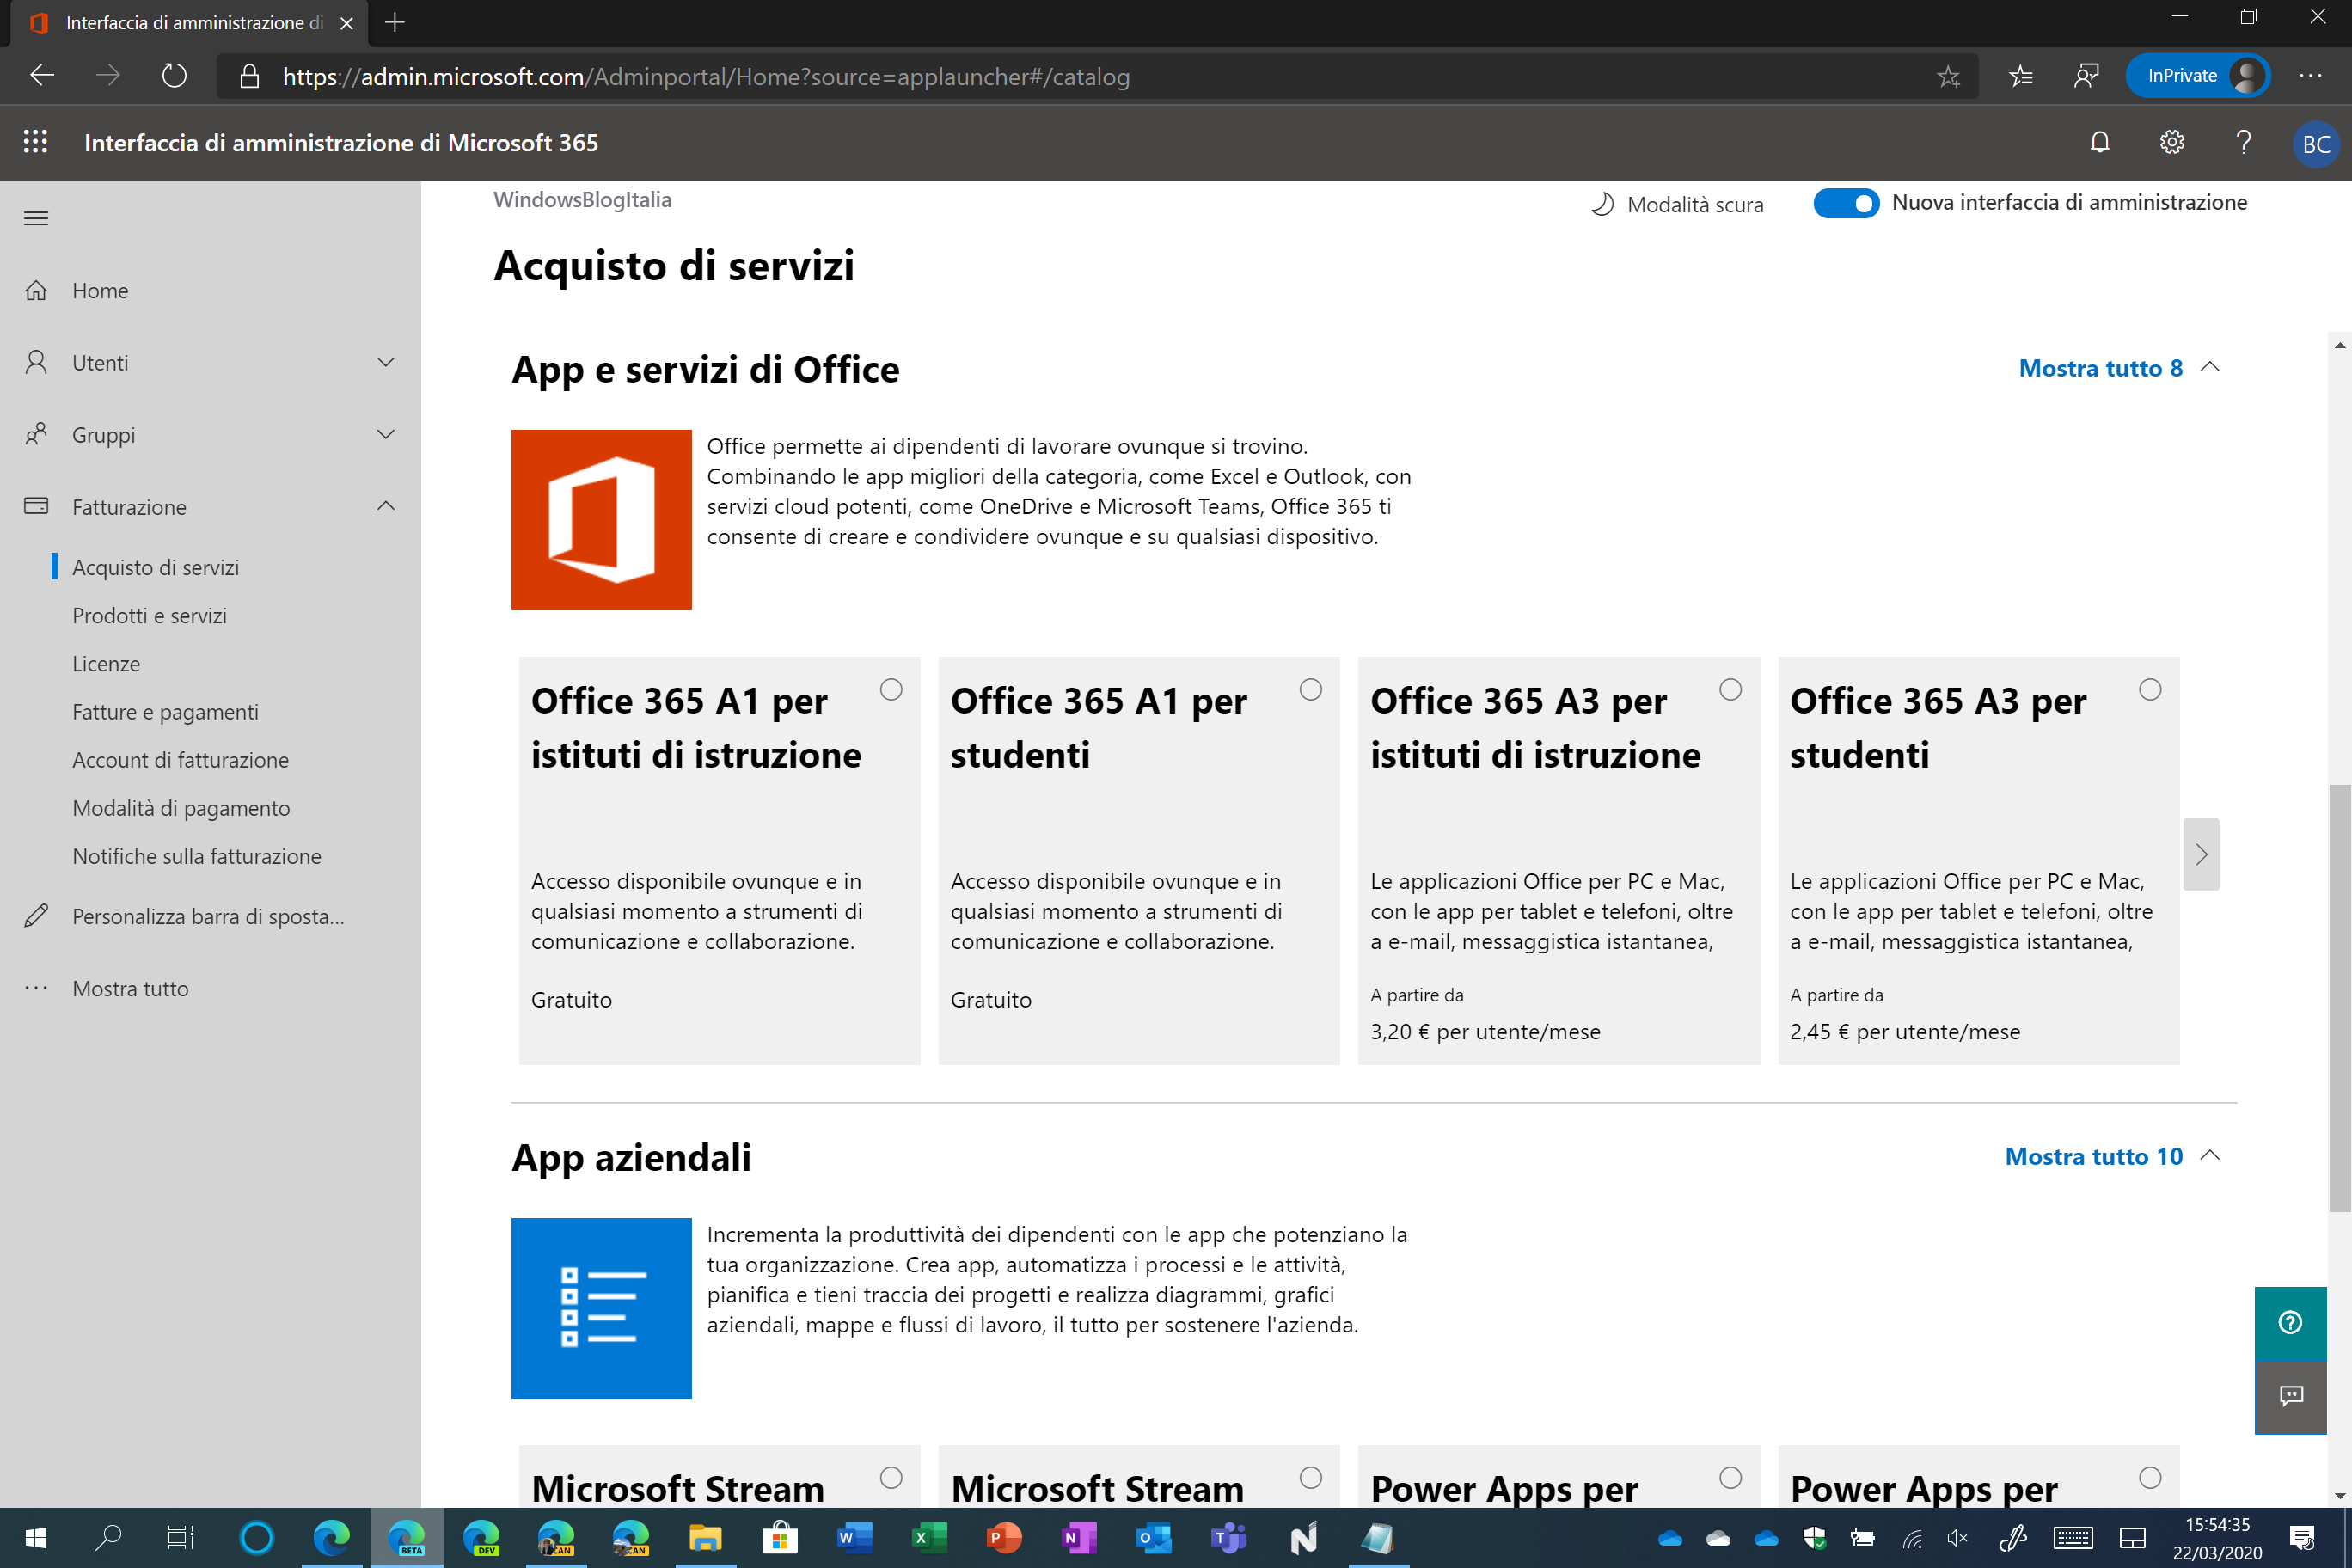 Attivazione E Utilizzo Gratis Di Office 365 E Microsoft Teams Per Le Scuole